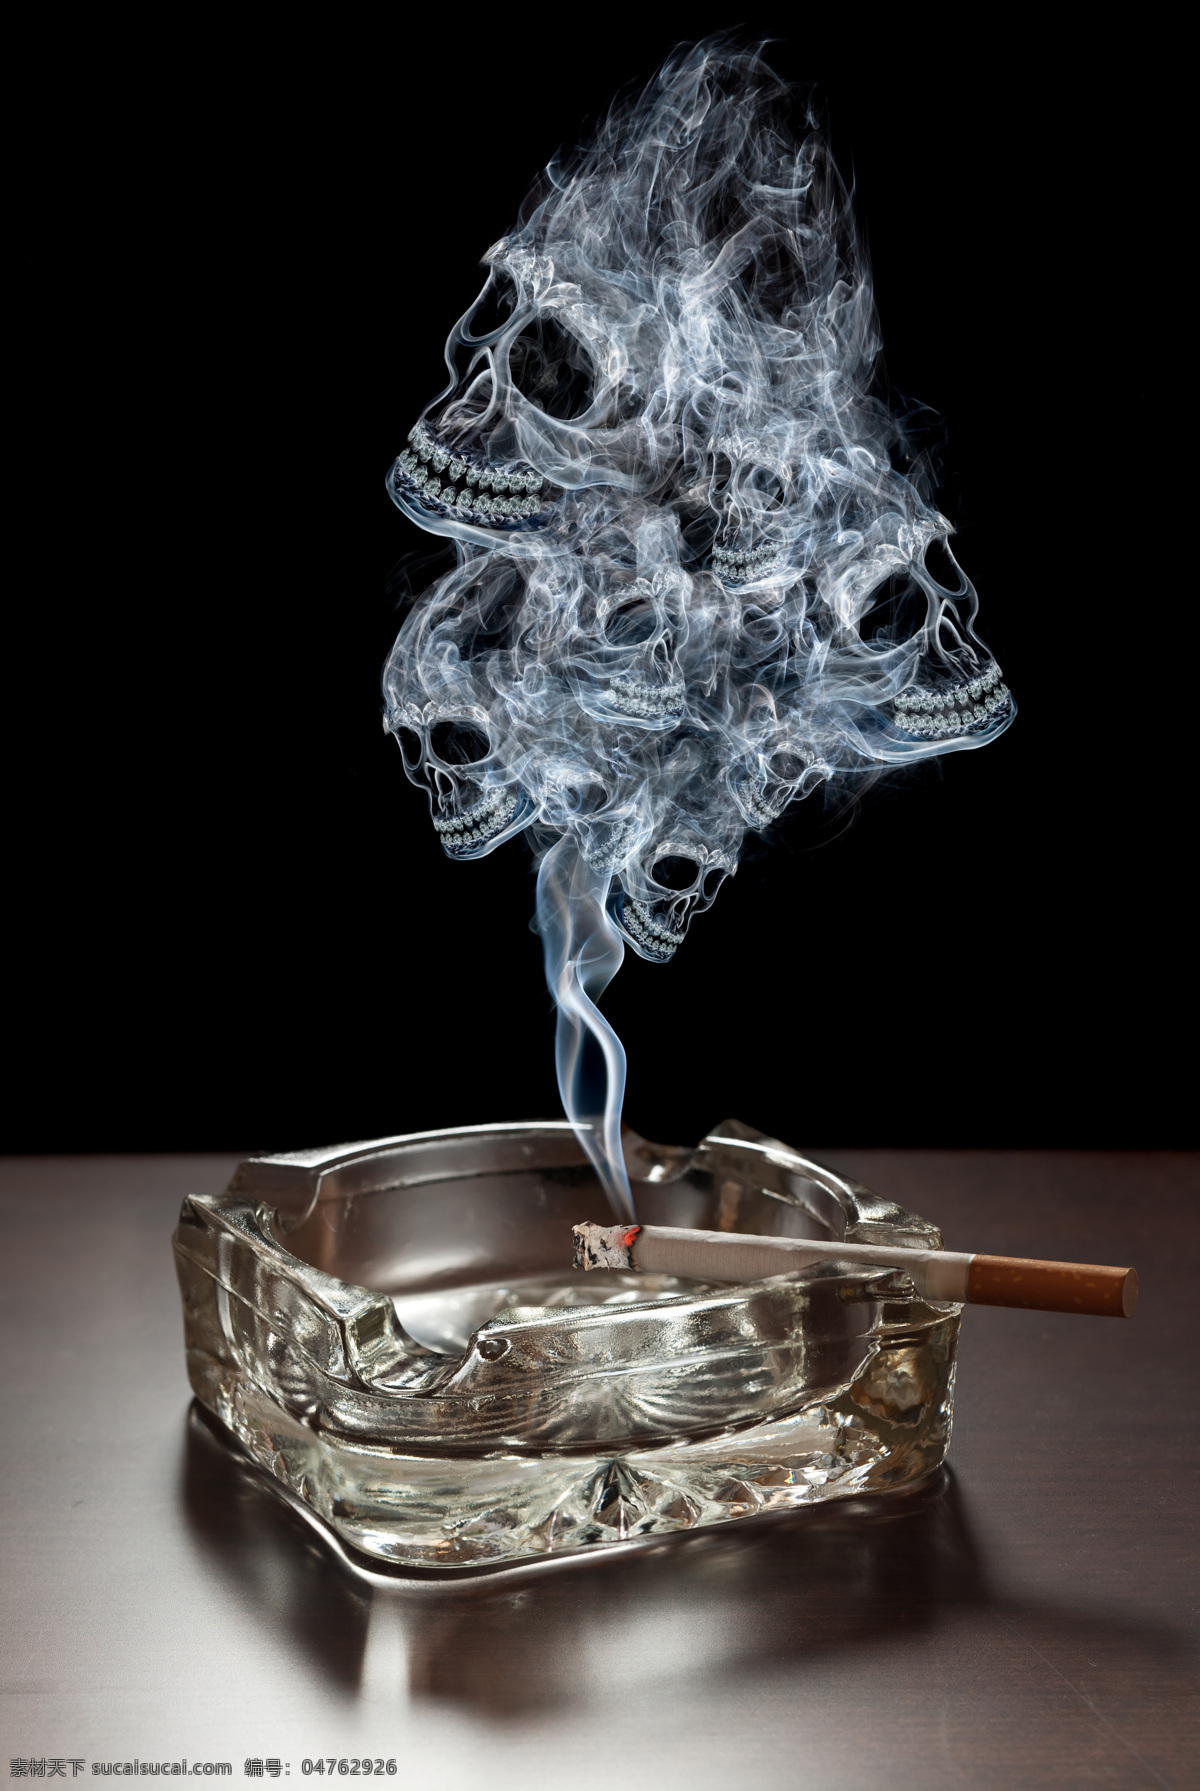 禁烟 烟灰缸 烟头 燃烧的香烟 香烟 烟 烟雾 骷髅 烟雾骷髅 宣传 禁烟宣传 创意 创意禁烟 广告 工艺广告